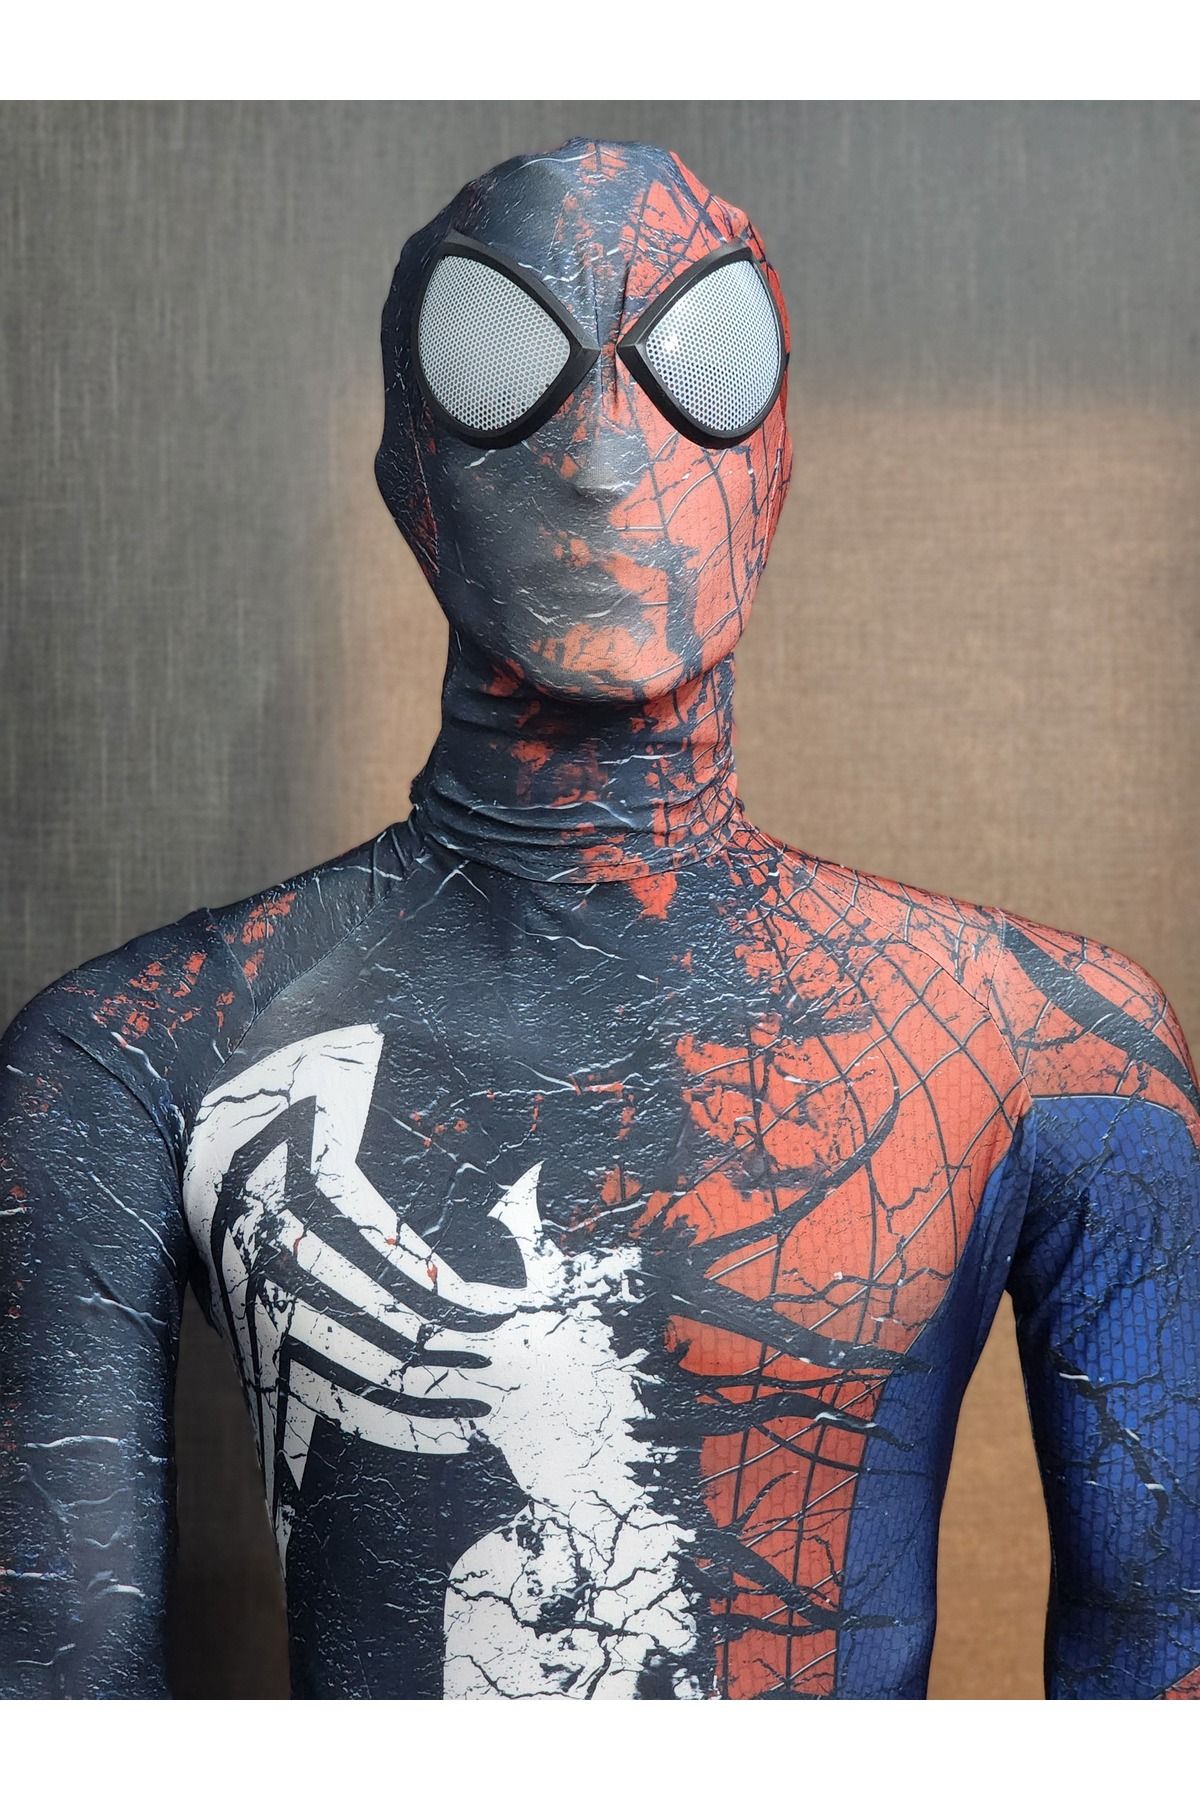 Örümcek Adam Venom and Spiderman 3D Kostüm